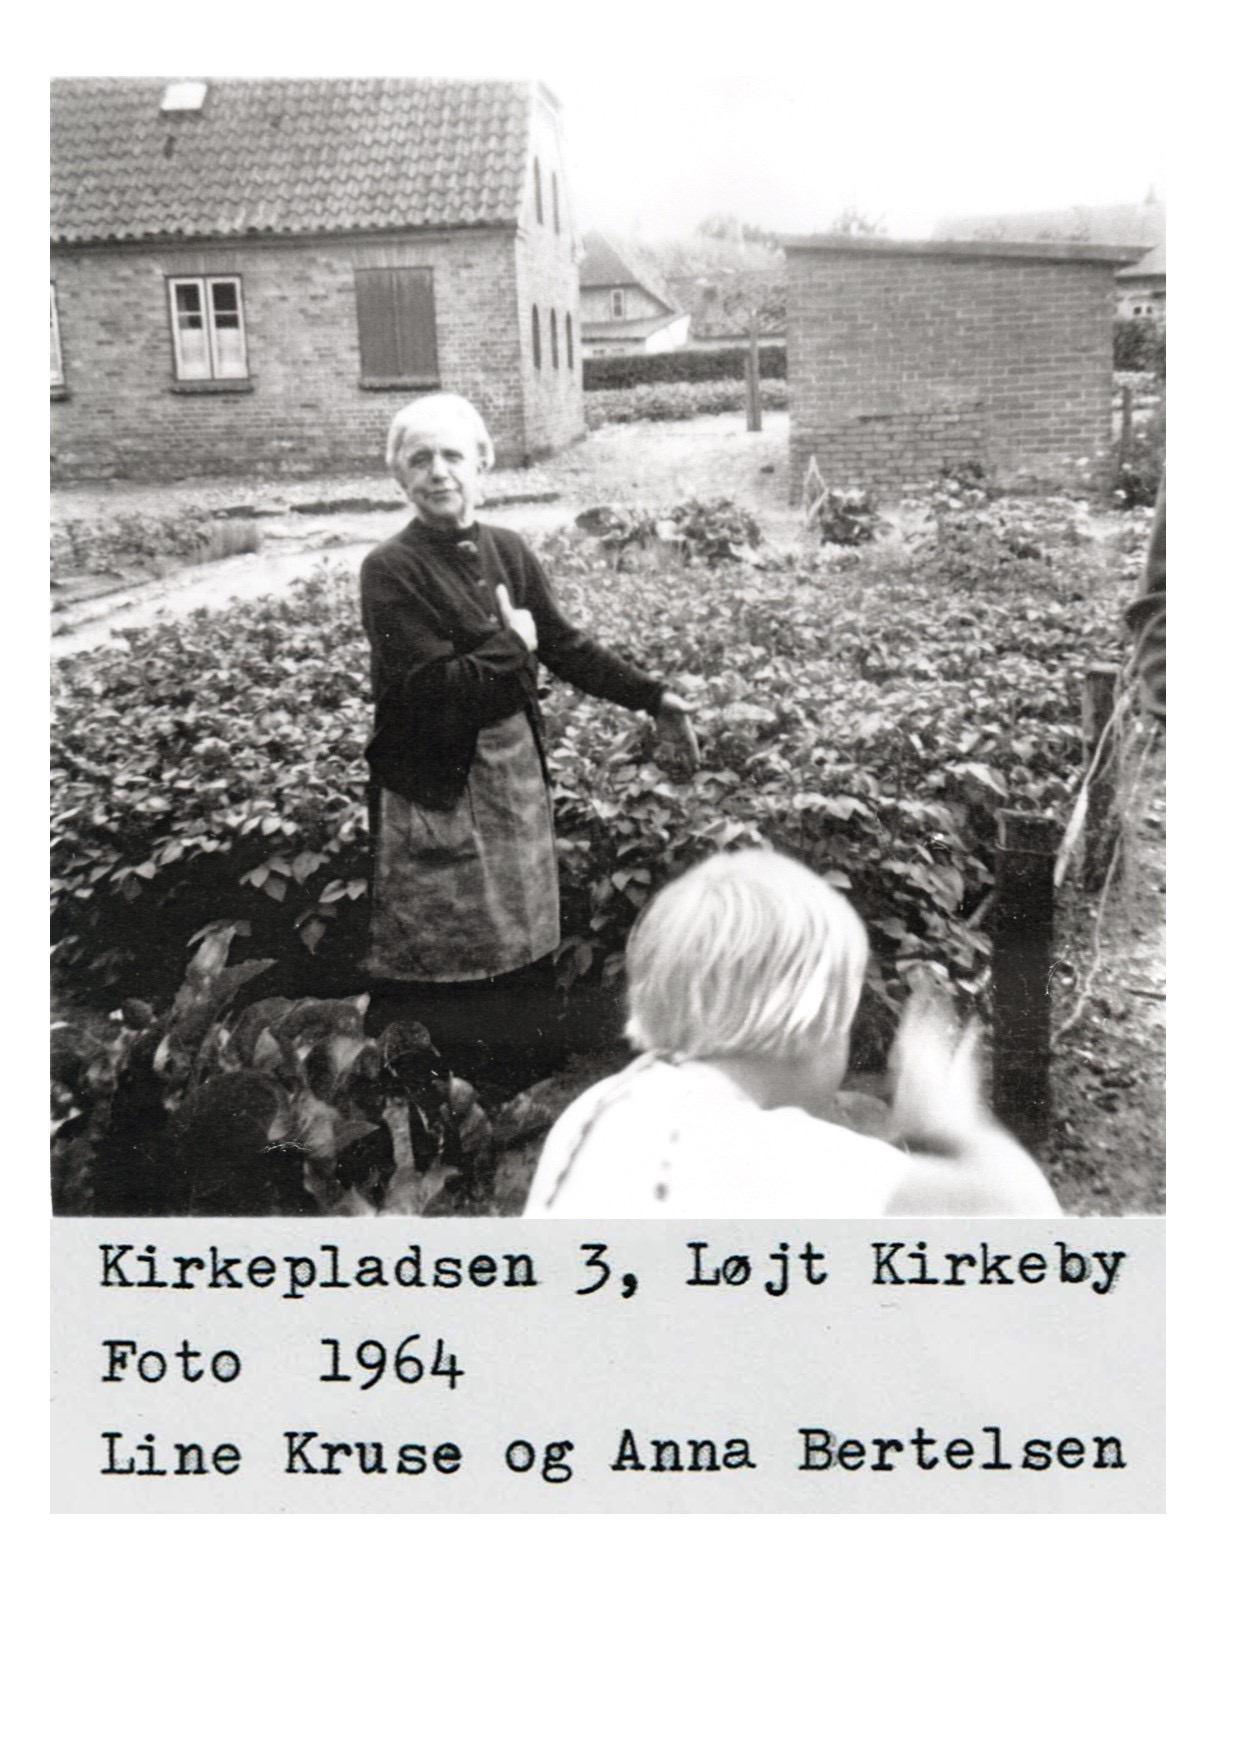 Line Kruse og Anna Bertelsen 